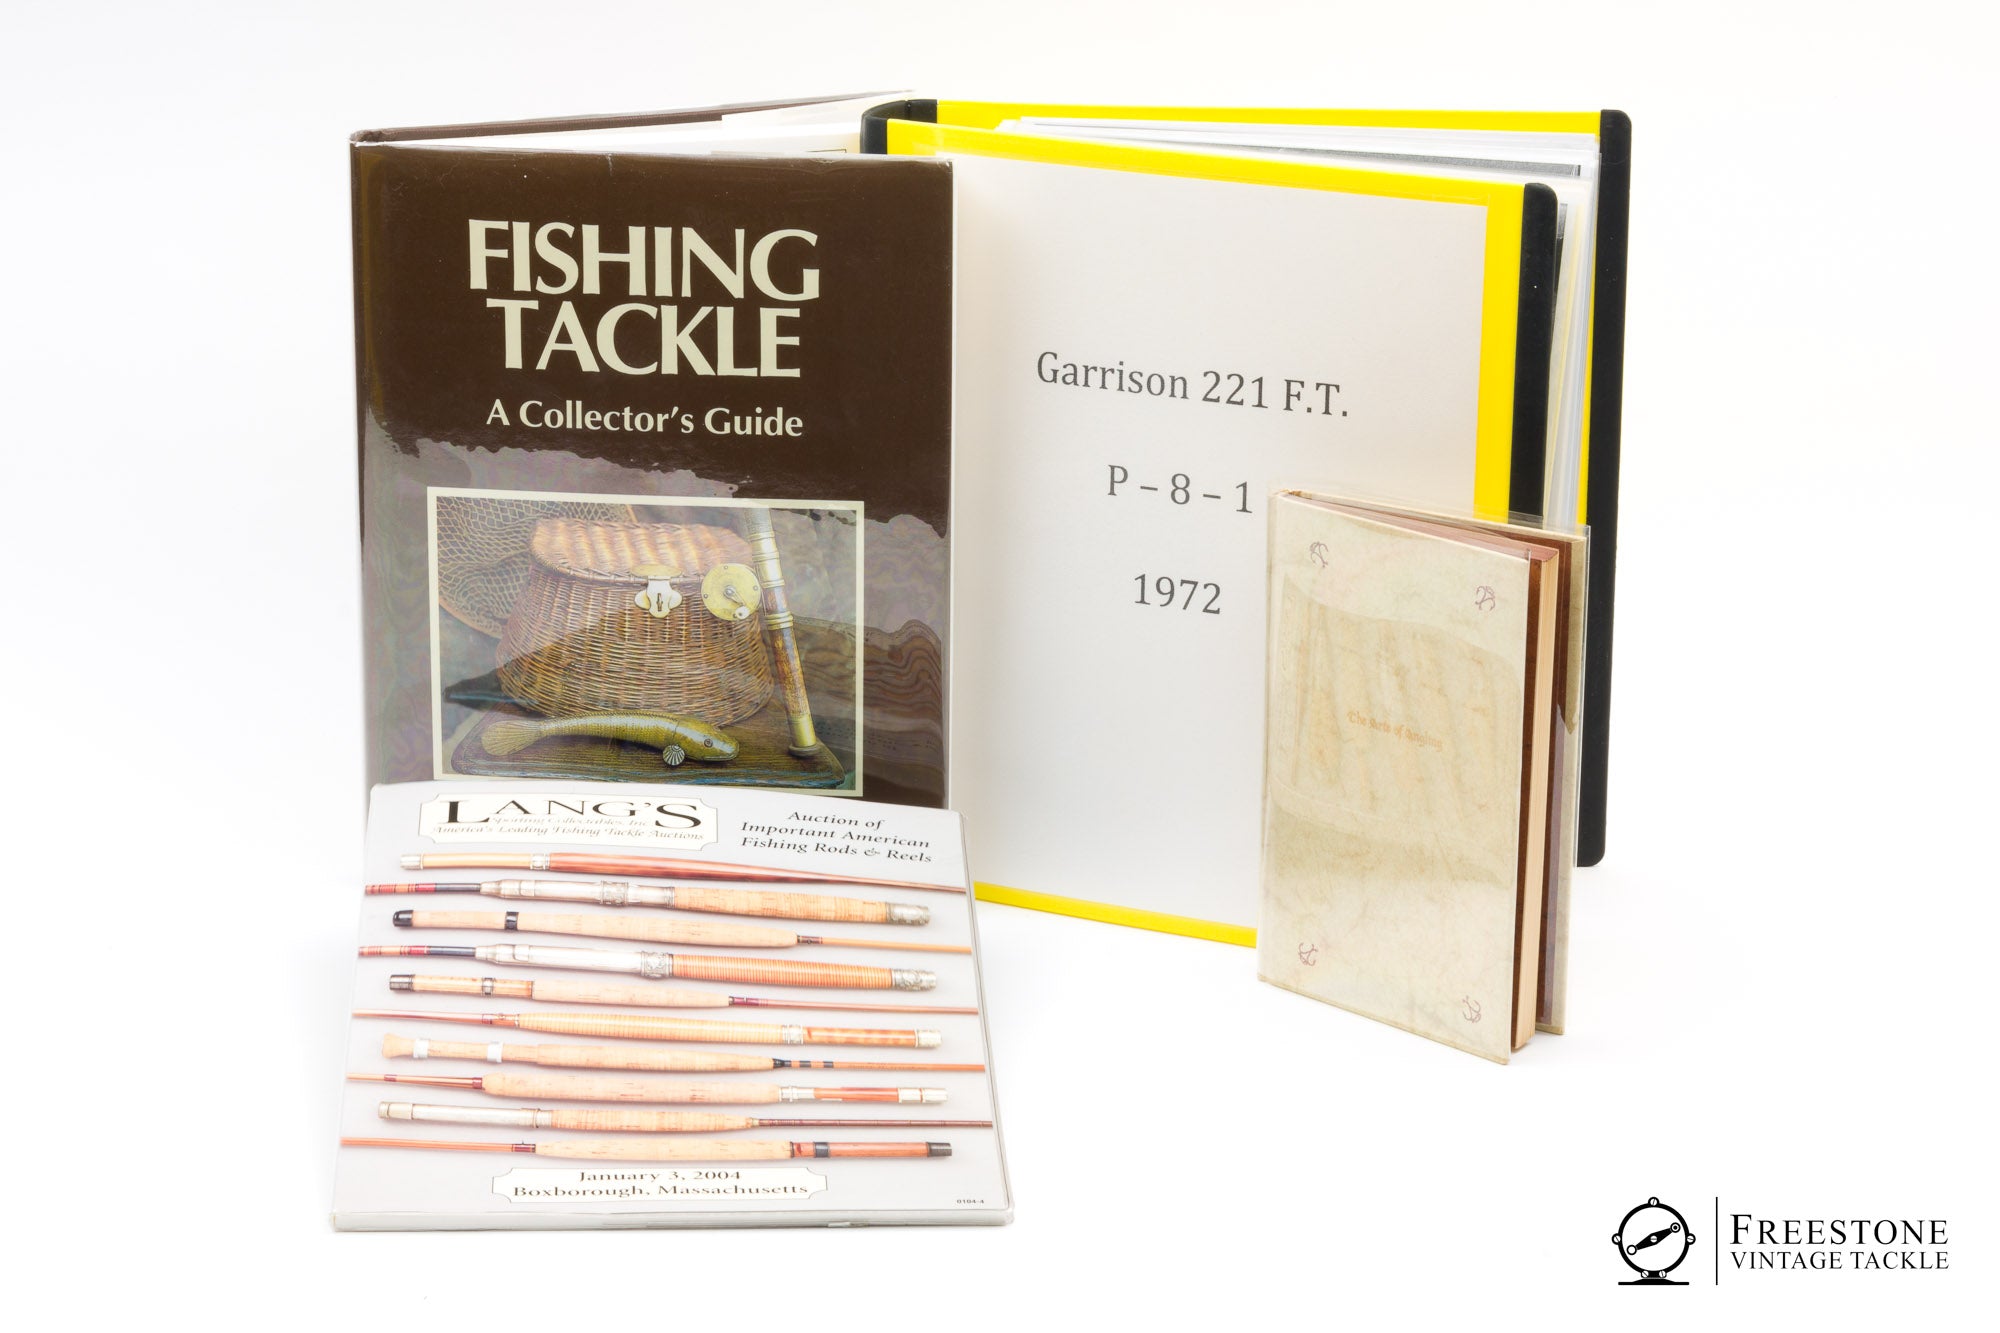 楽天ブックス: Pocket Guide to Fly Fishing Large Mouth Bass - Ron Cordes -  9781931676045 : 洋書